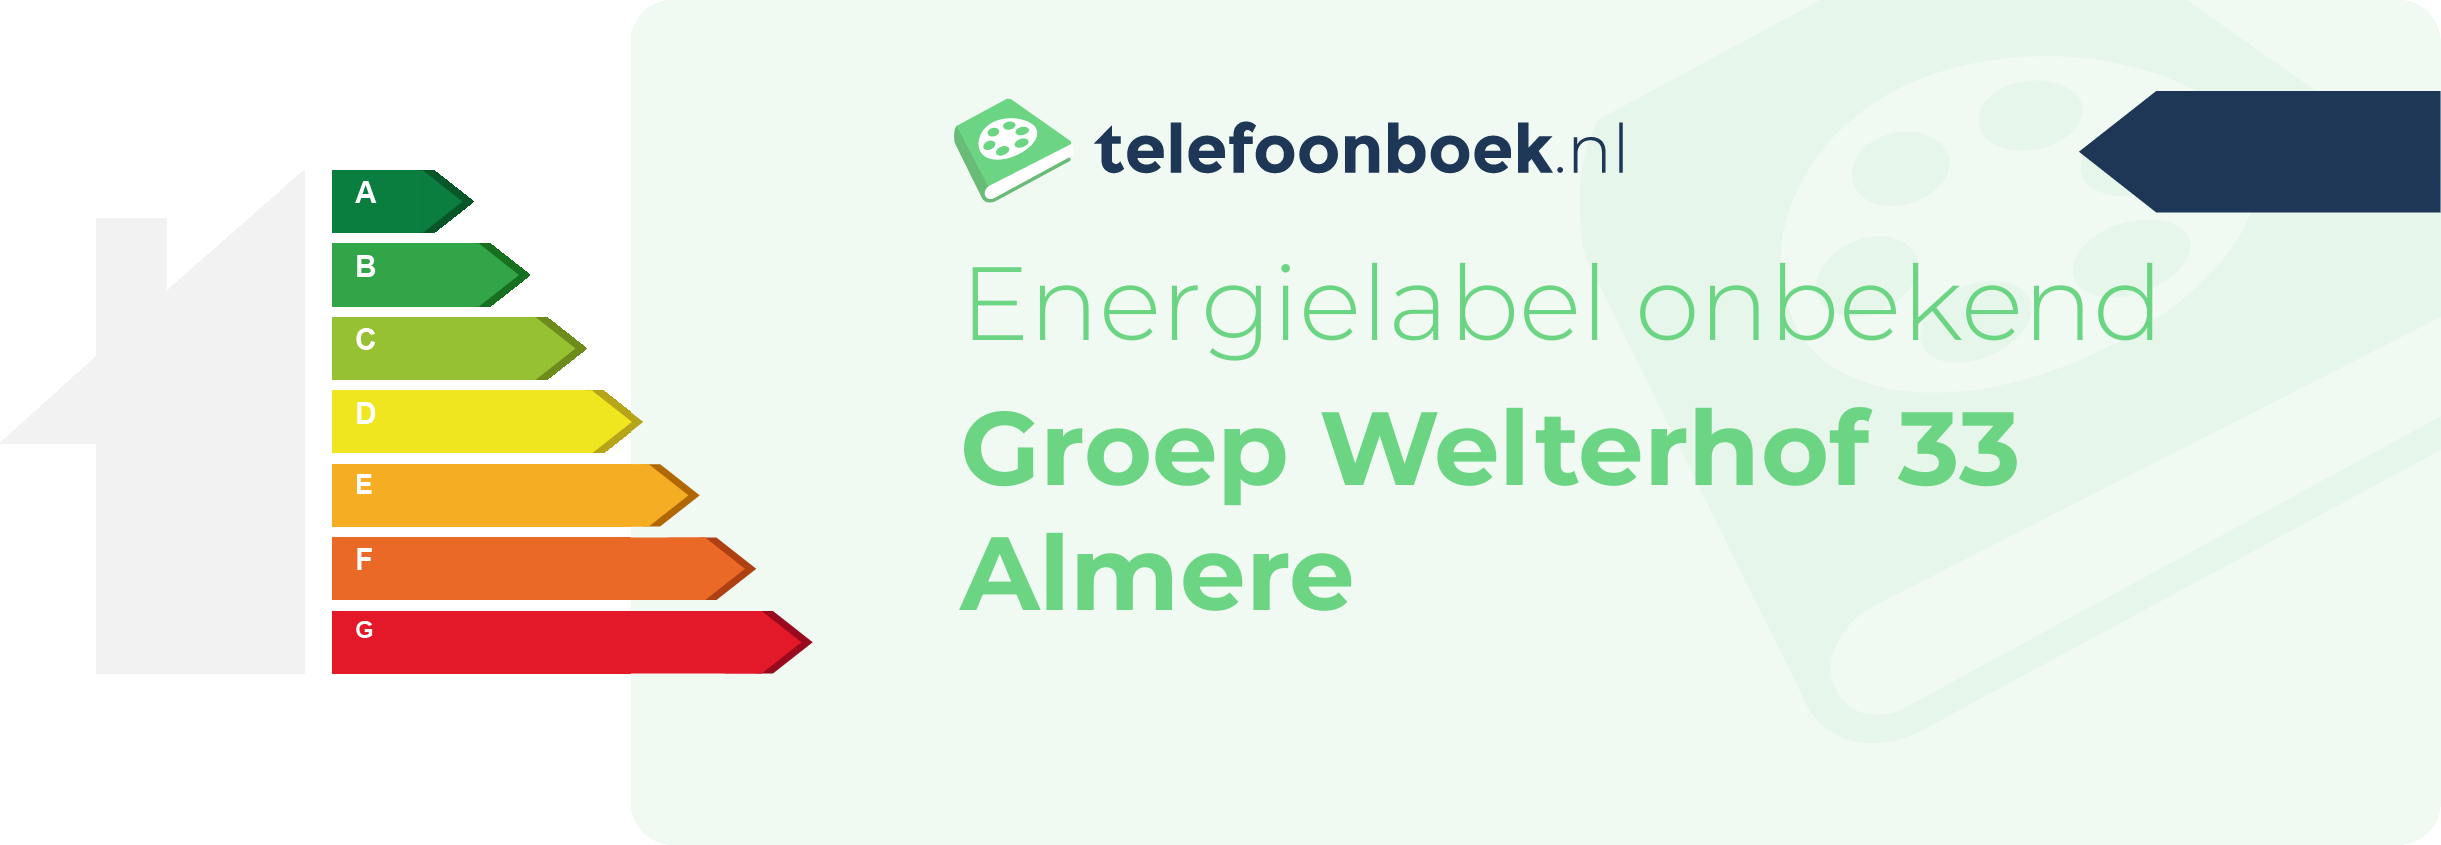 Energielabel Groep Welterhof 33 Almere